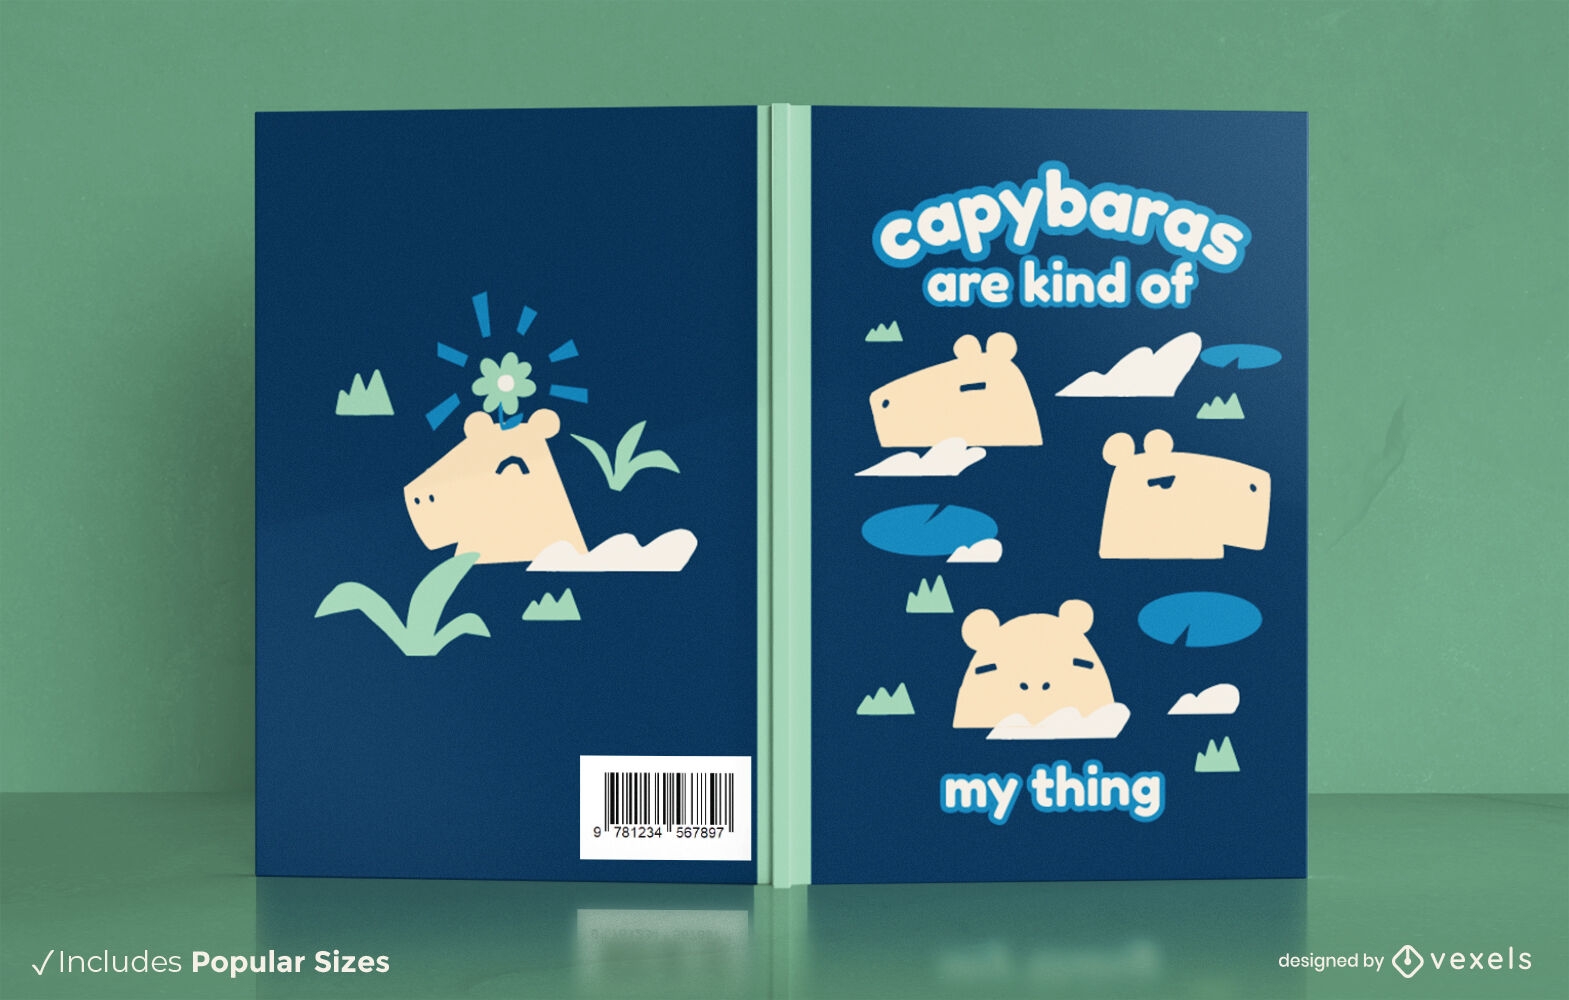 Capybaras-Buchcover-Design